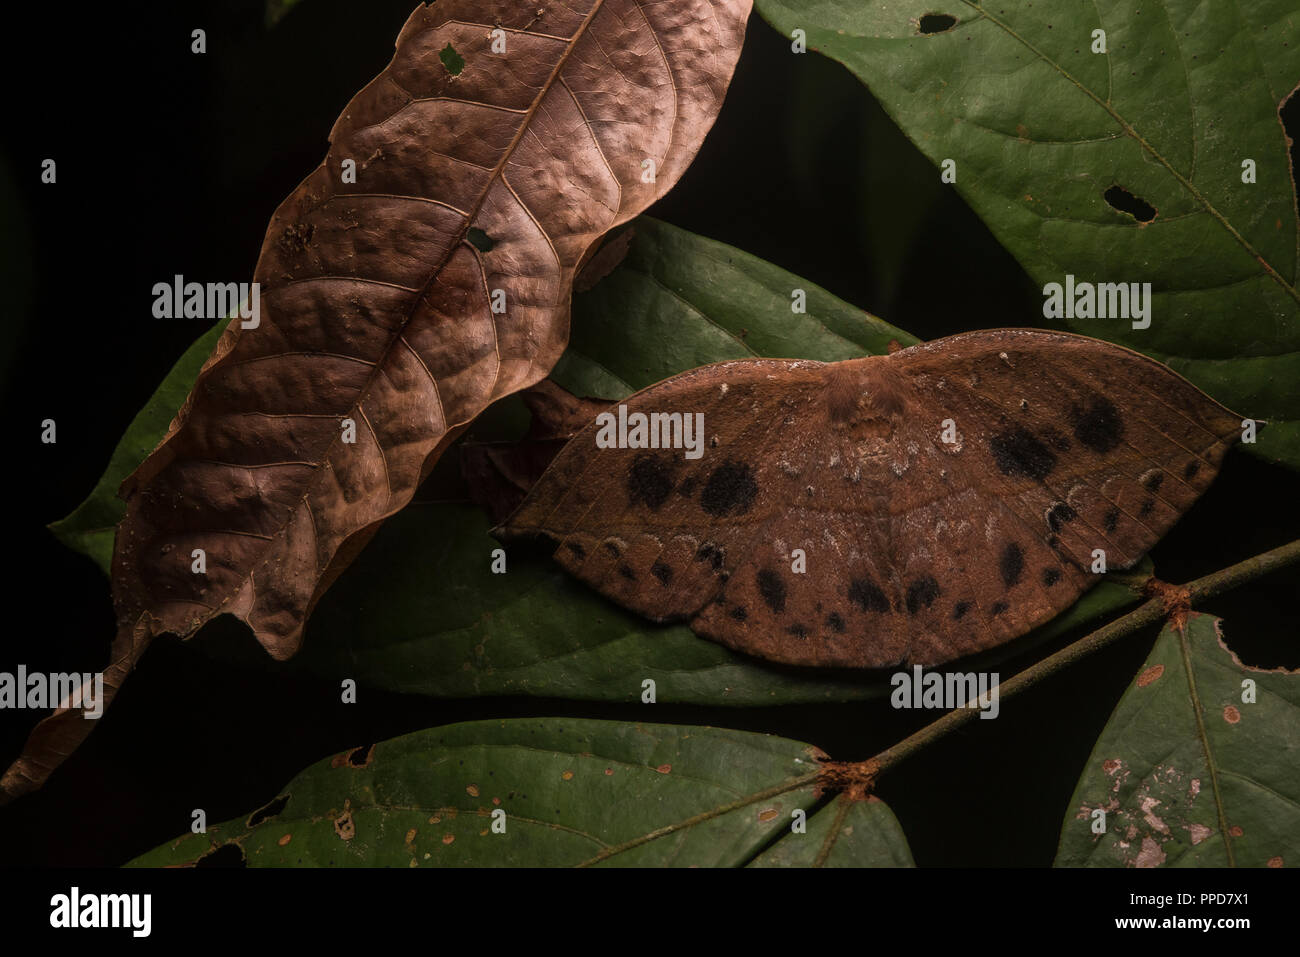 Eine Motte Arten ahmt die abgestorbenen Blätter, um in zu mischen und die Aufmerksamkeit von Raubtieren entziehen. Stockfoto